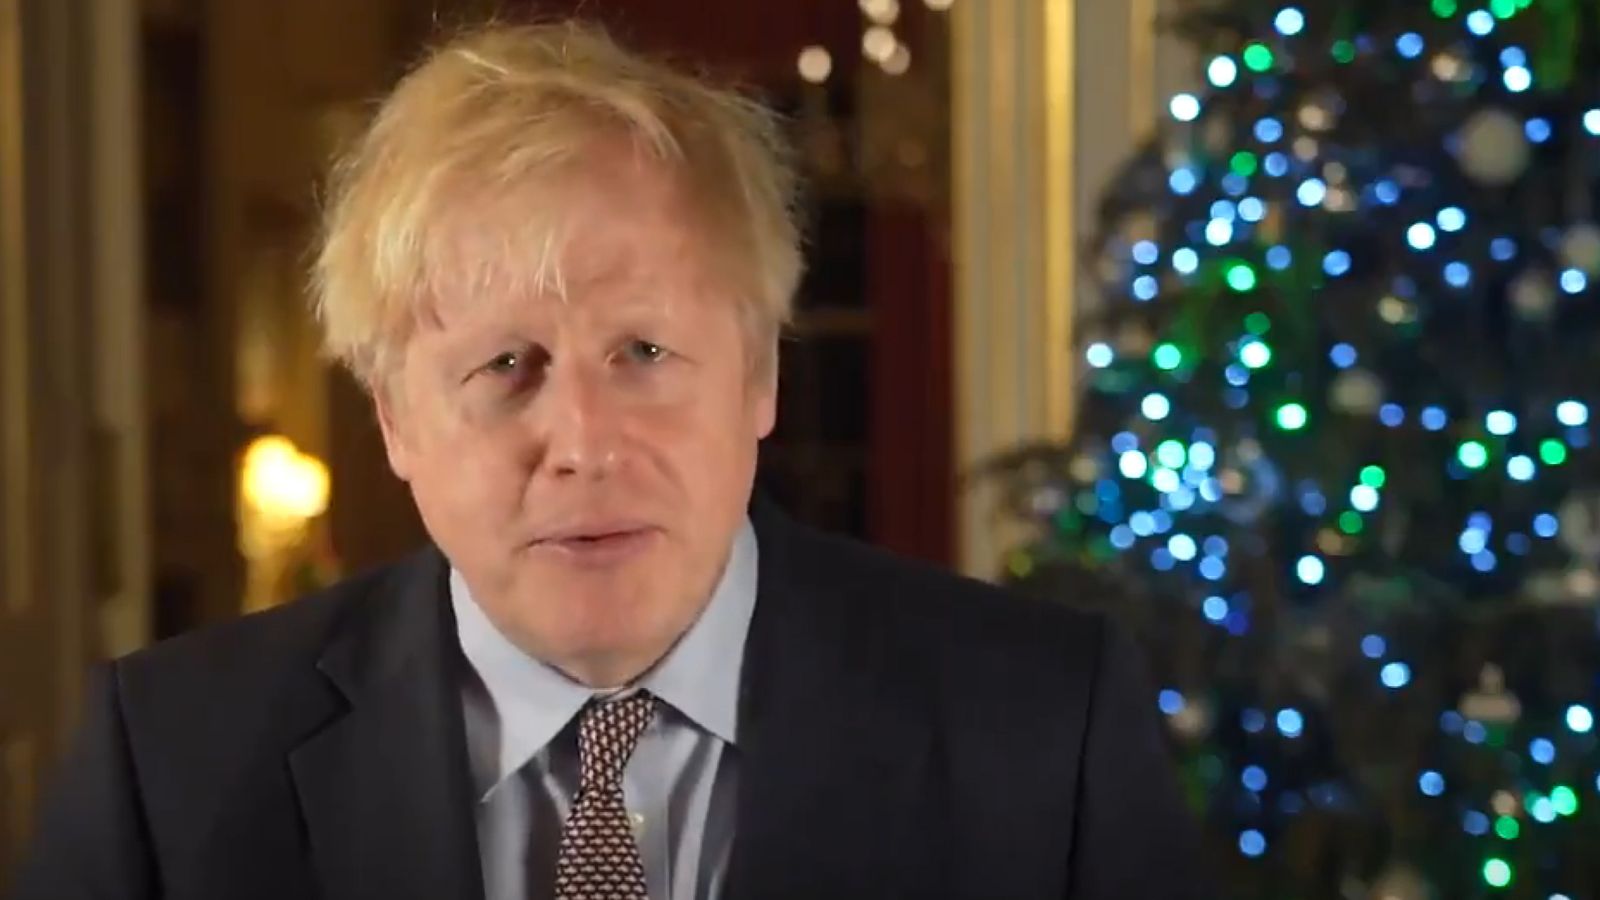 Boris Johnson PM mengatakan ‘Lanjutkan Natal’ dan menampar Scrooge Harries pada rencana pesta |  Berita Politik